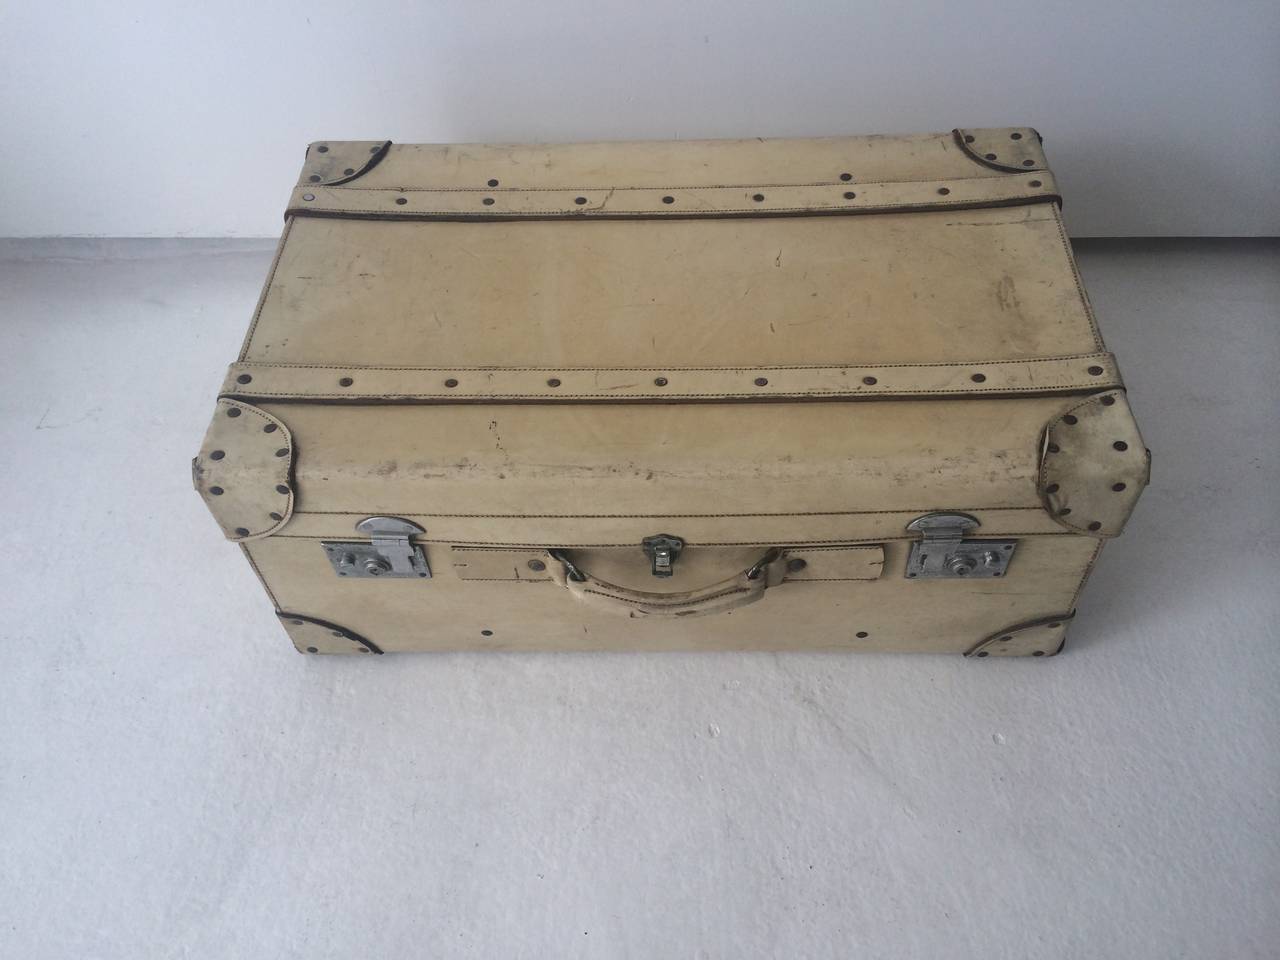 pigskin suitcase